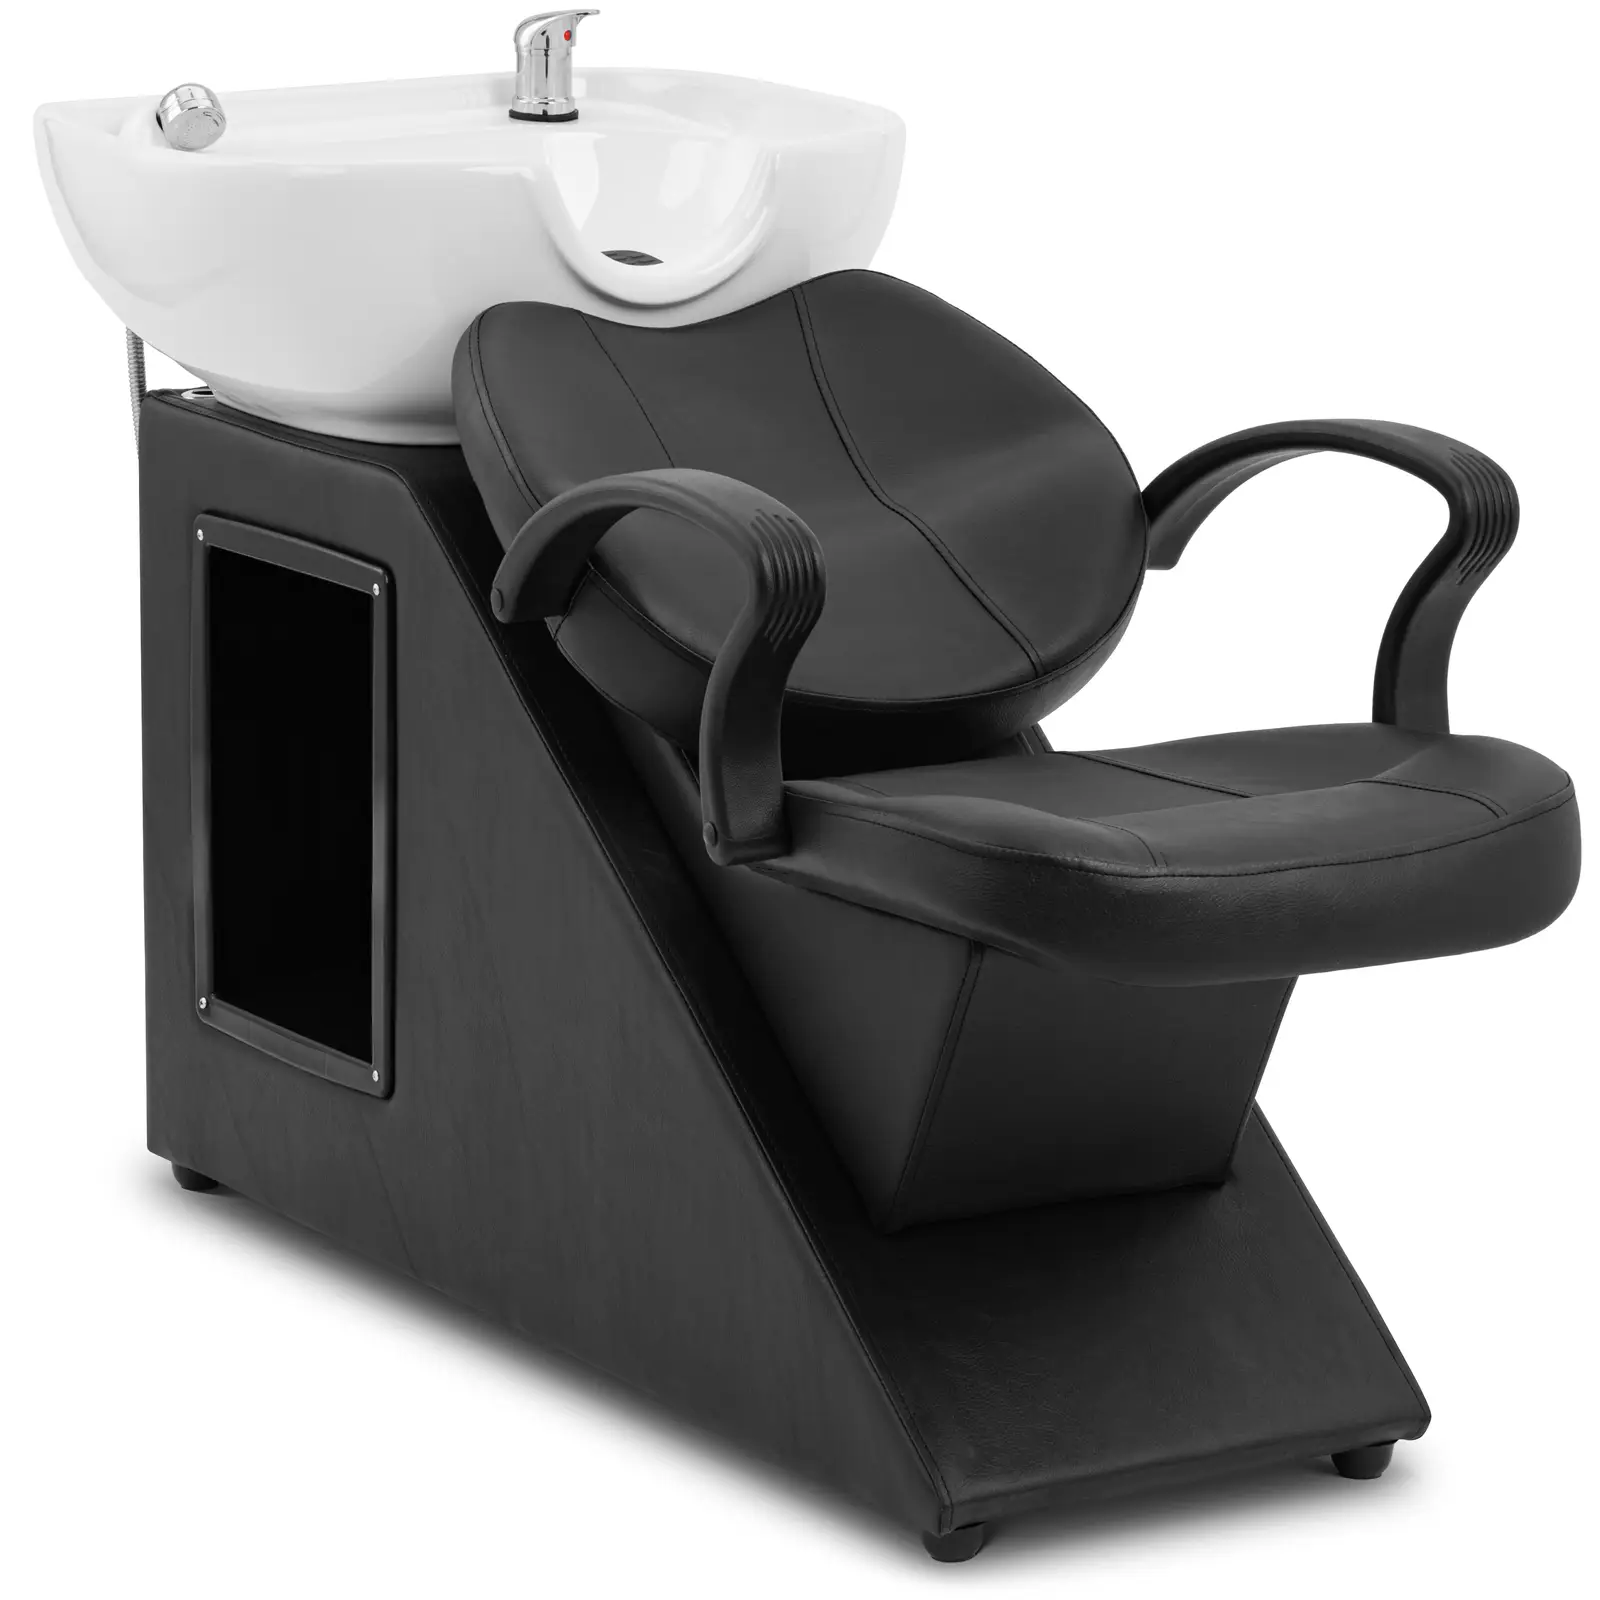 Friseur-Waschbecken mit Sessel - Maße Becken 600 x 450 x 150 mm - Schwarz/Weiß - 0